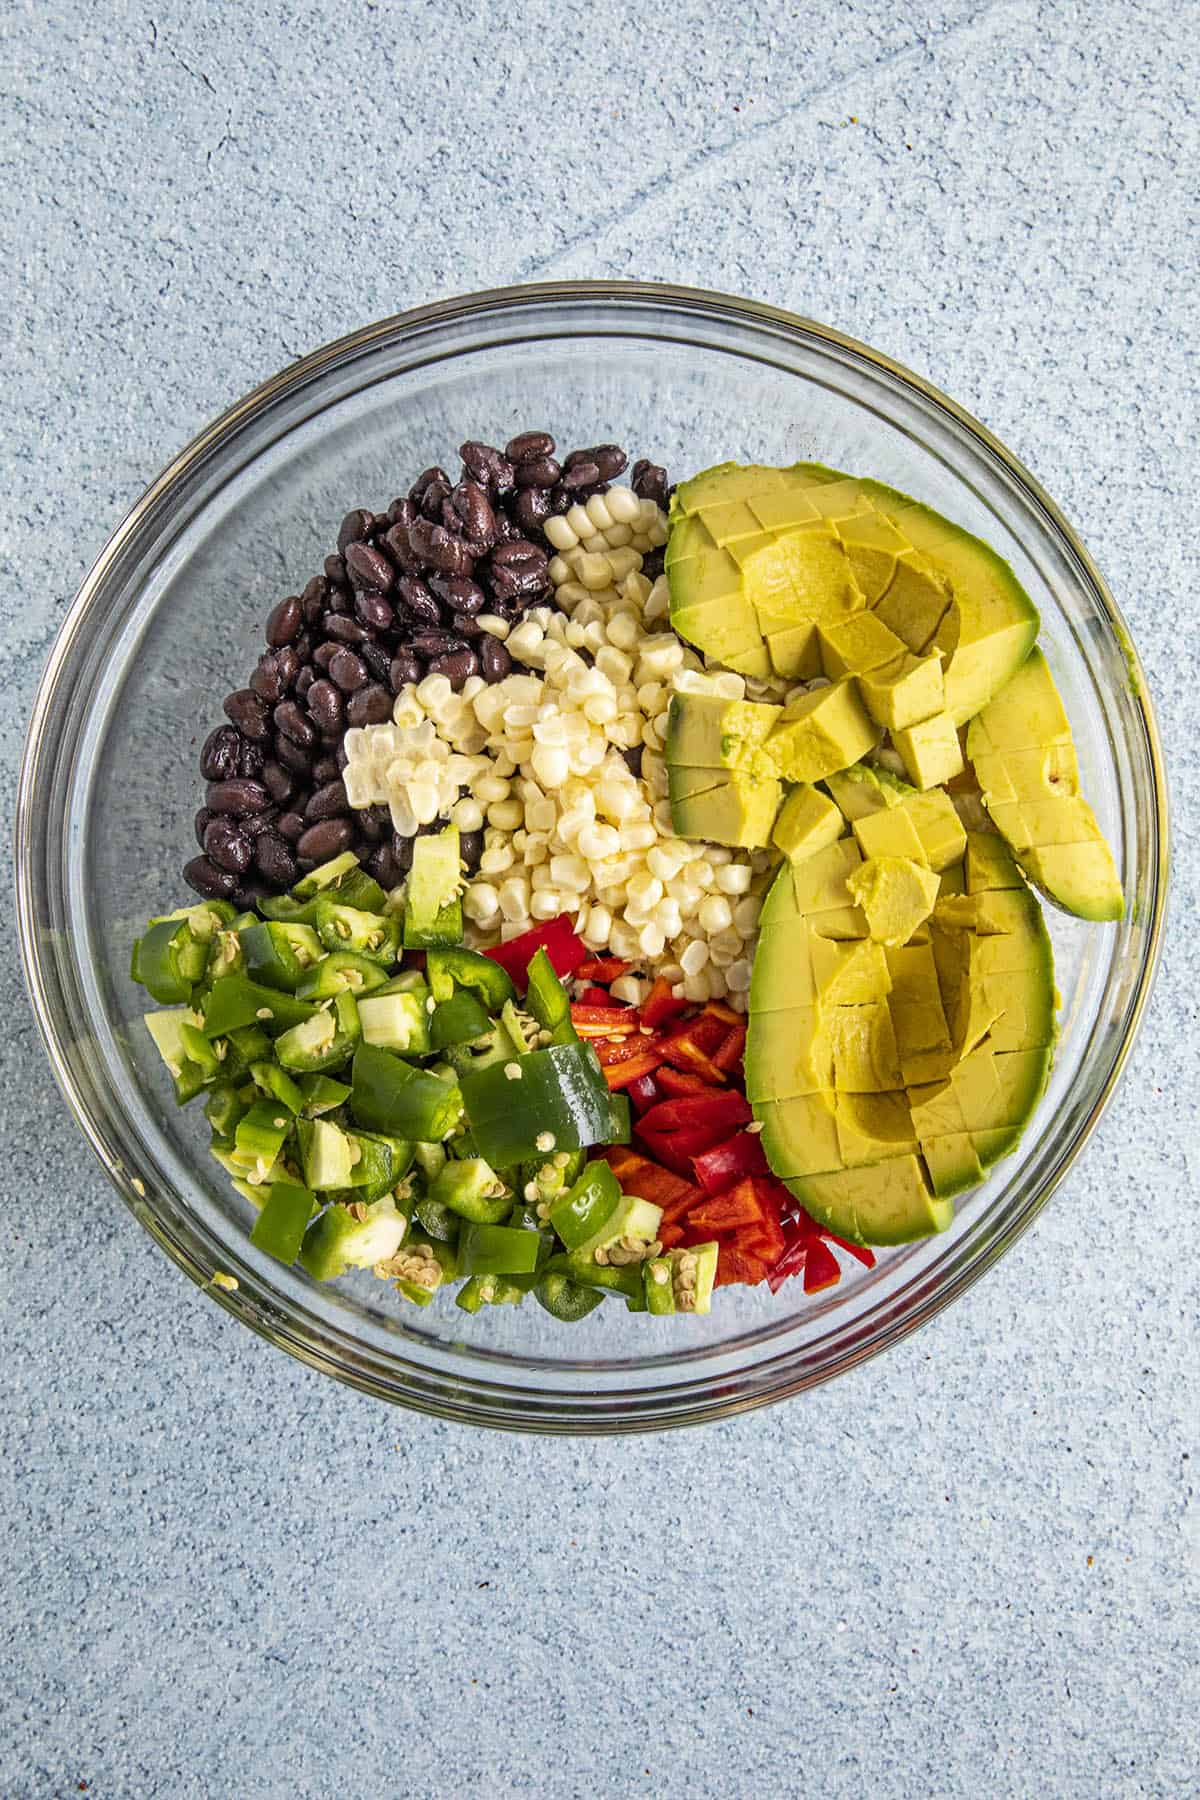 Black Bean Salad primary ingredients in a bowl